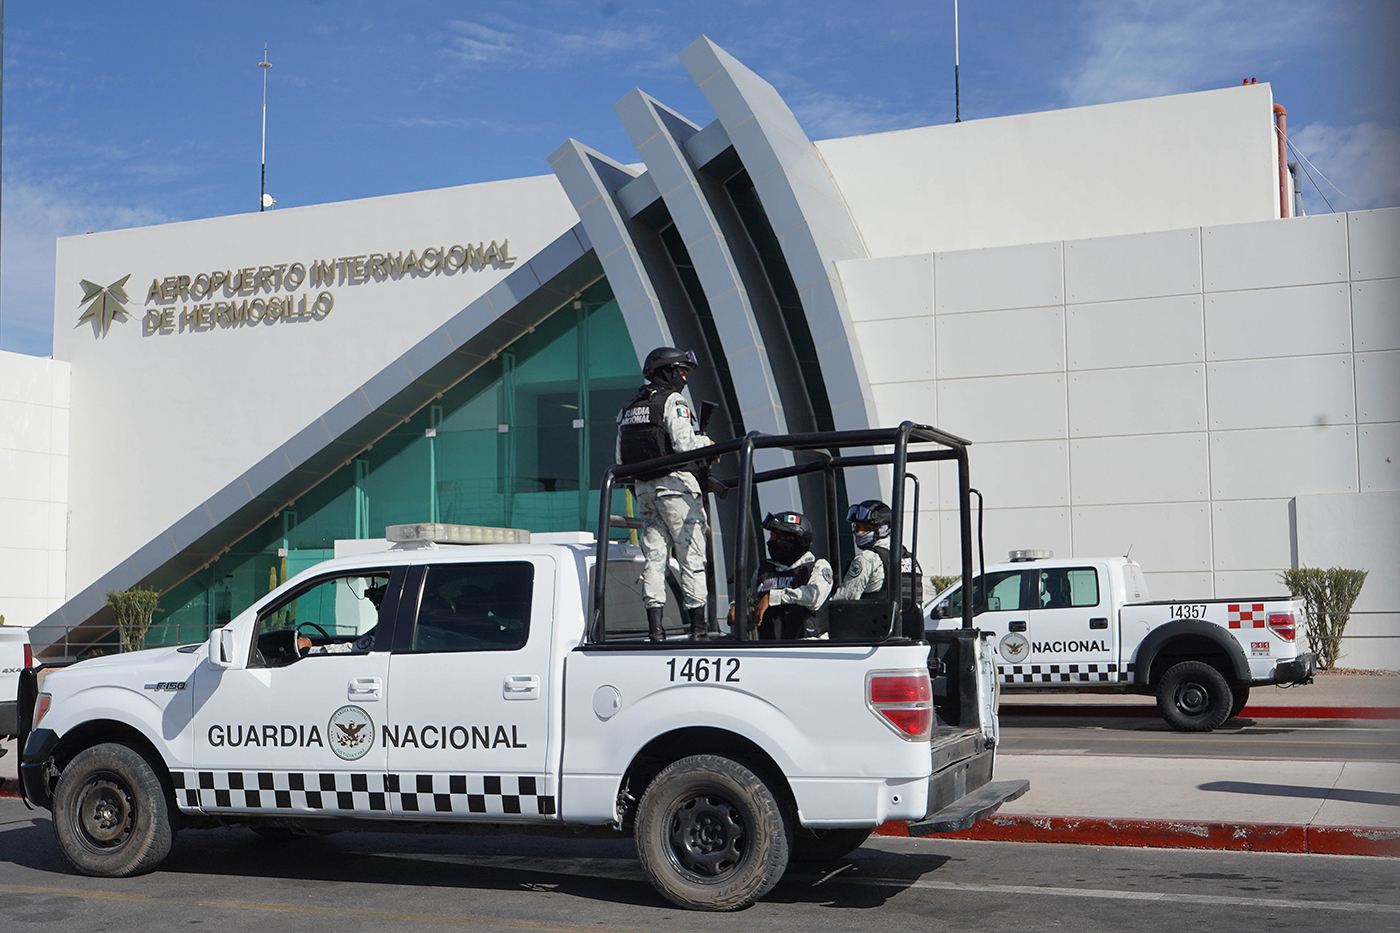 La Guardia Nacional vigila permanentemente el Aeropuerto Internacional de Hermosillo Sonora